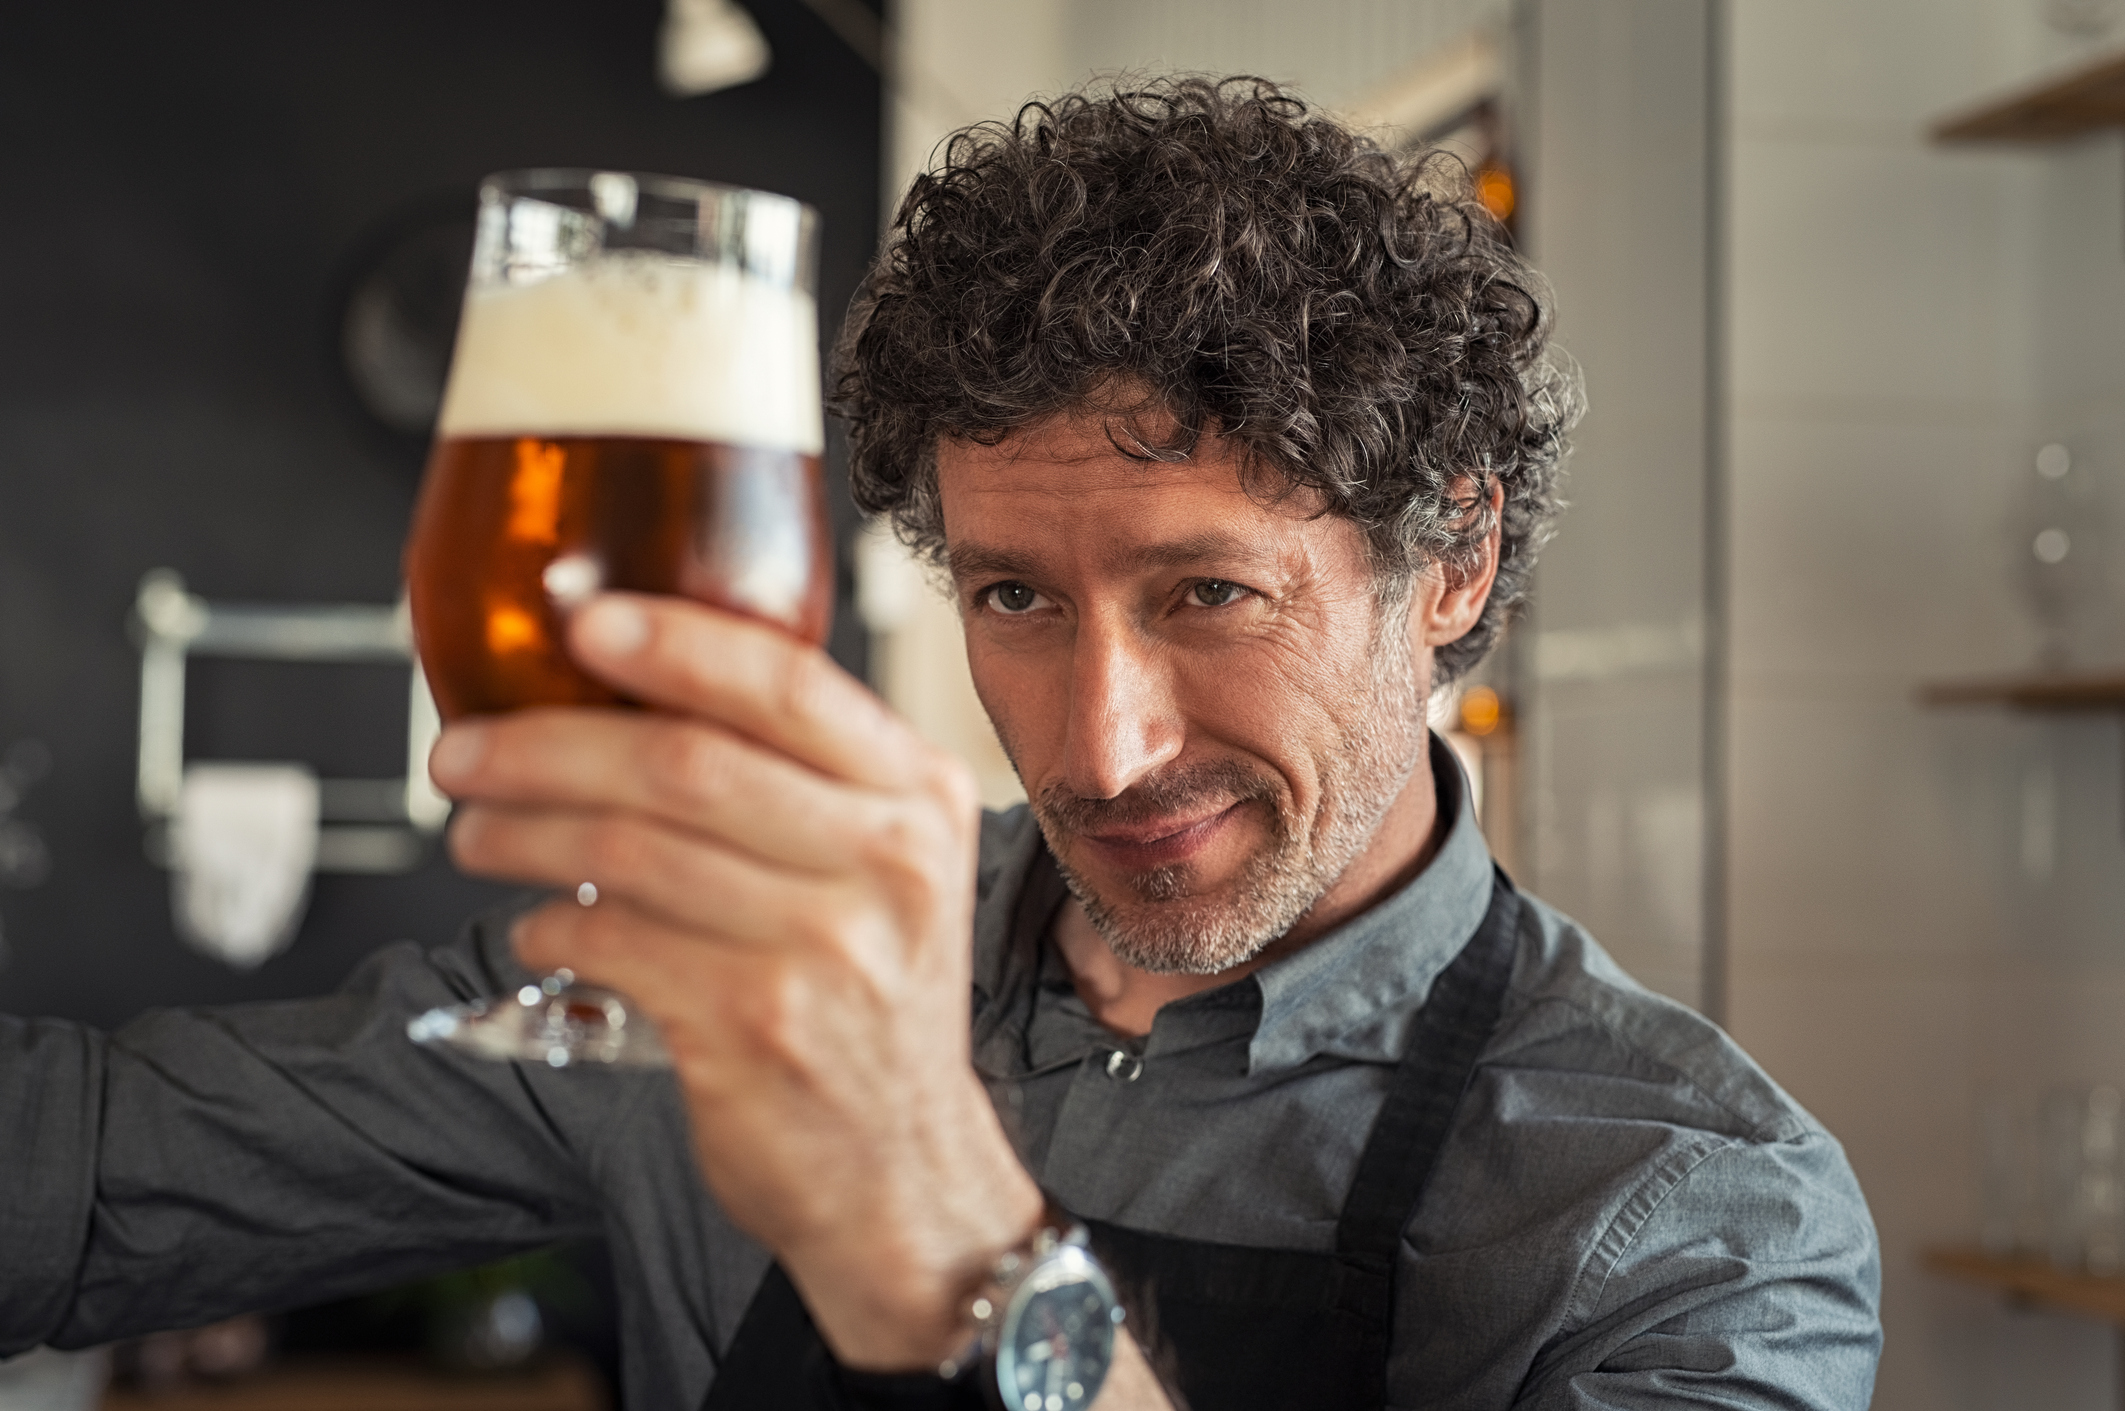 Senac Reference oferece cursos sobre escolas cervejeiras europeias